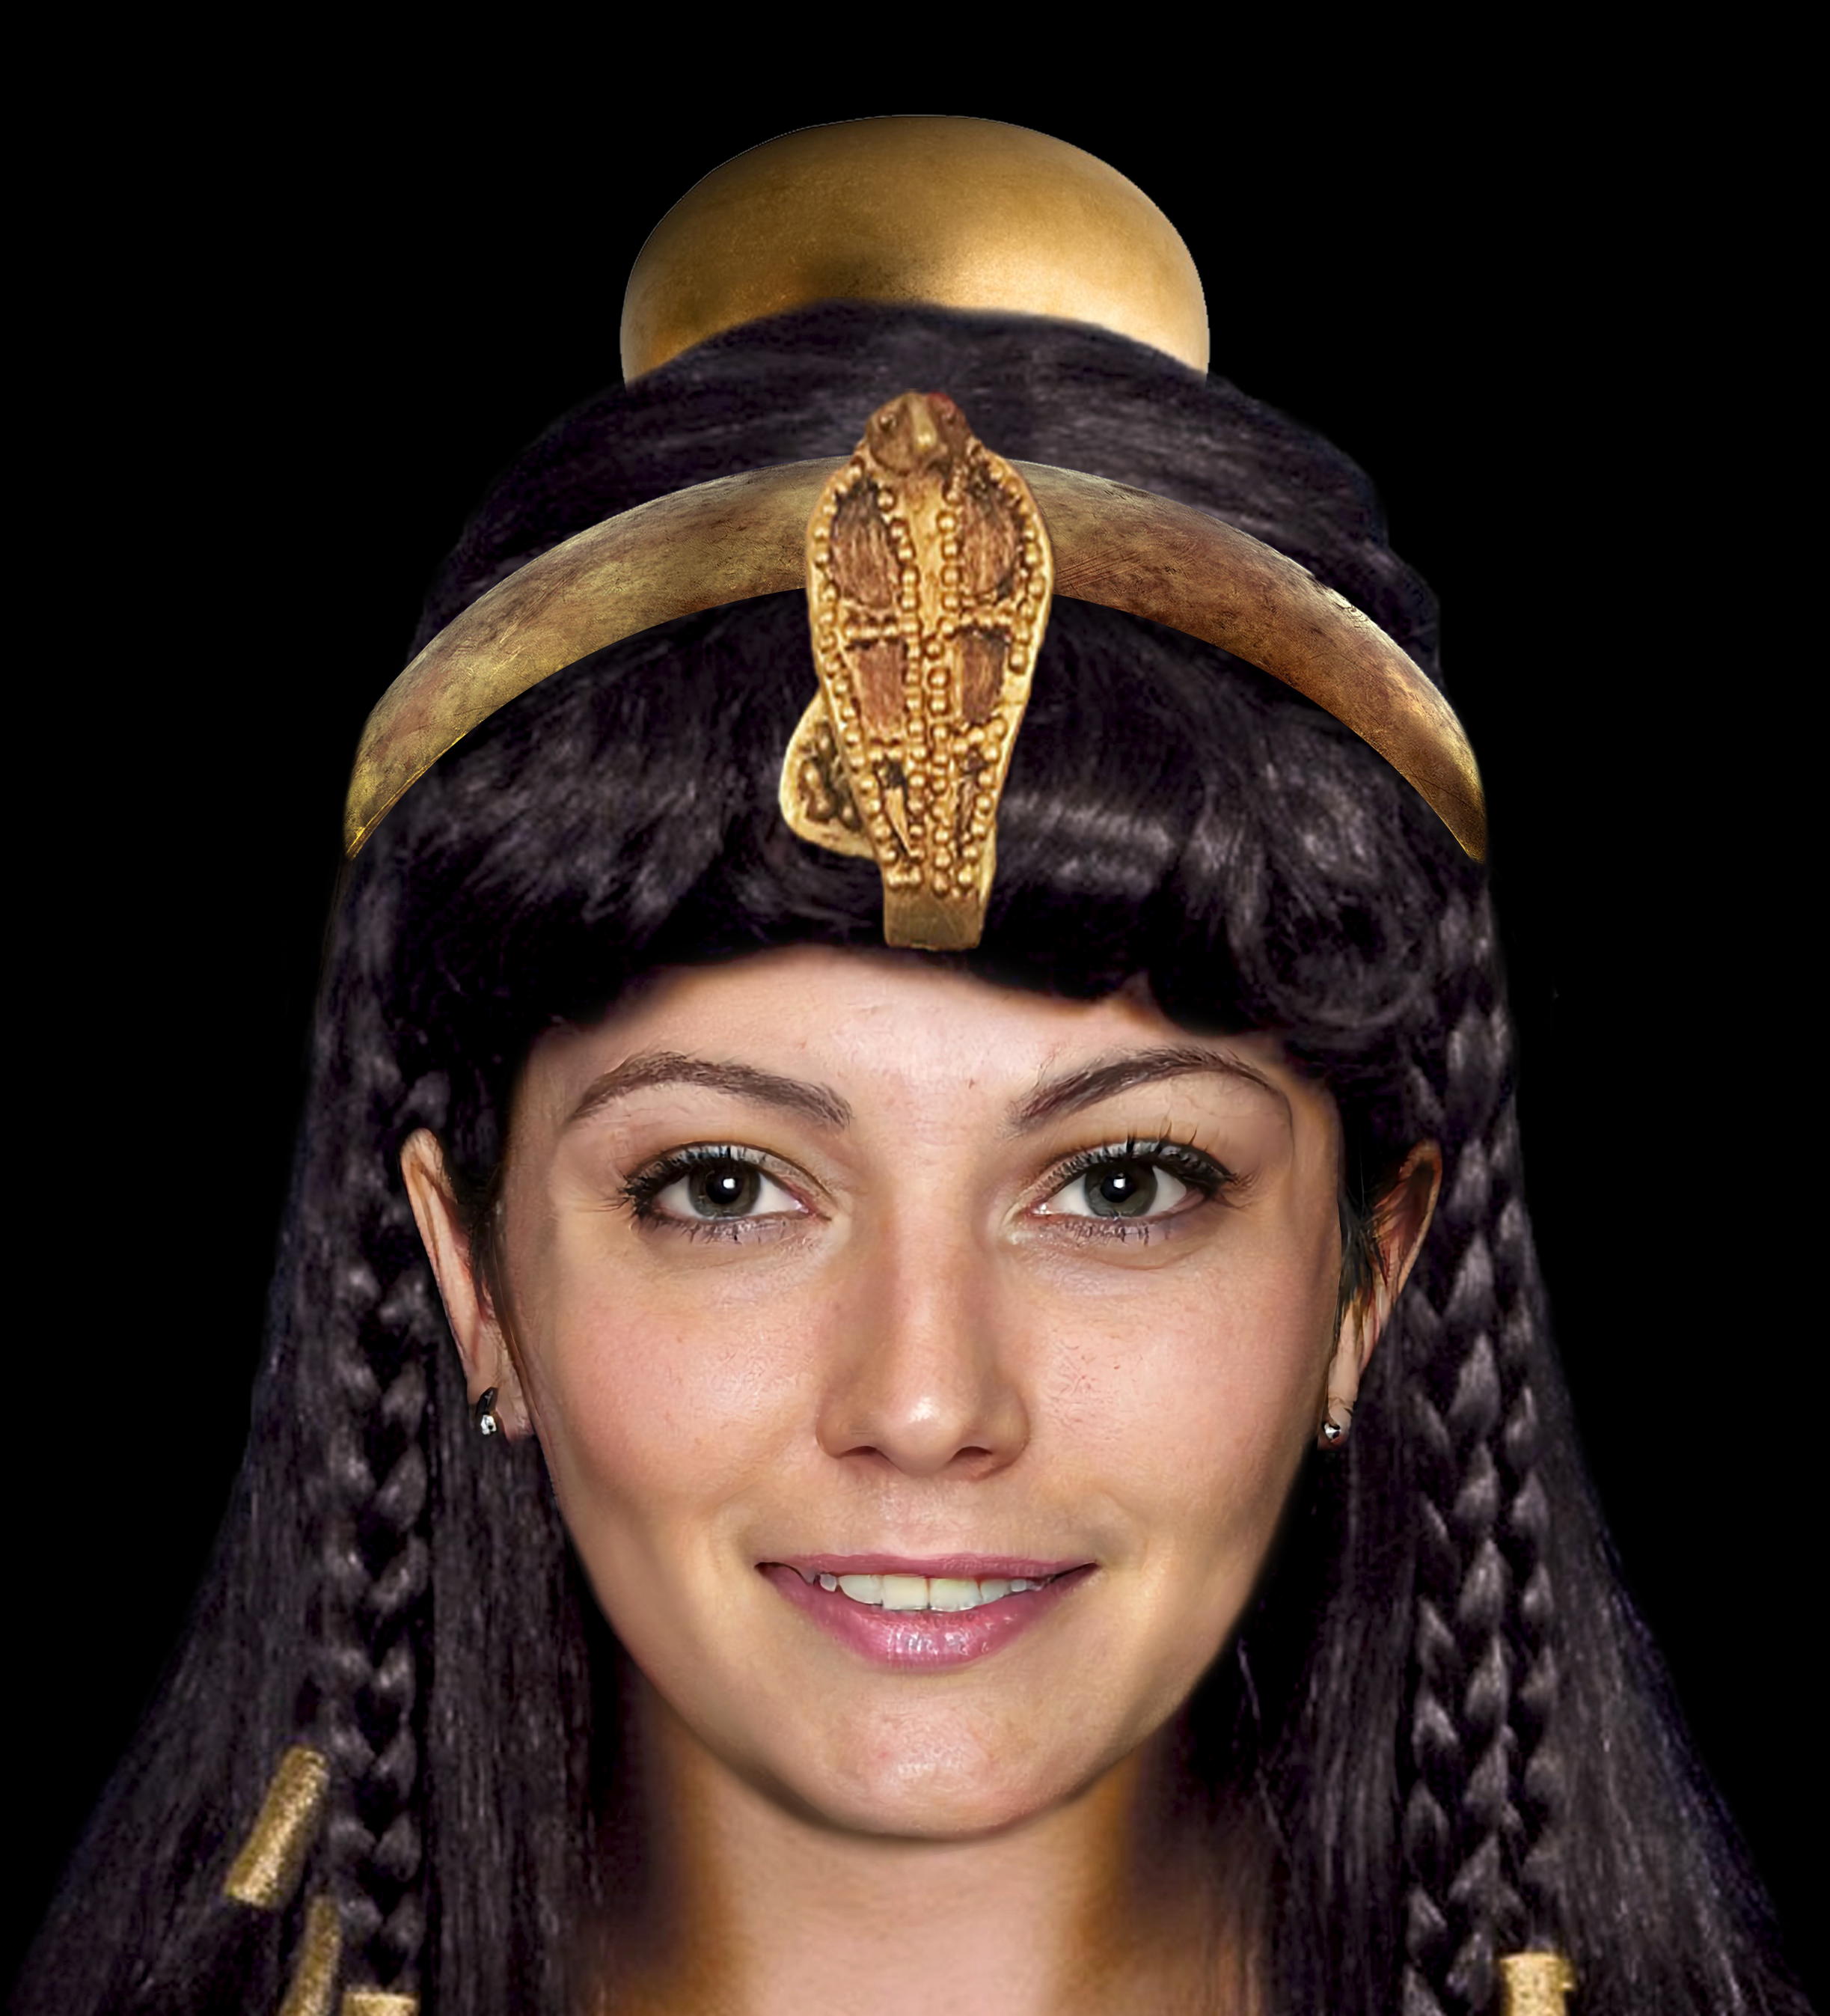 Cléopâtre VII, dernière reine d'Égypte